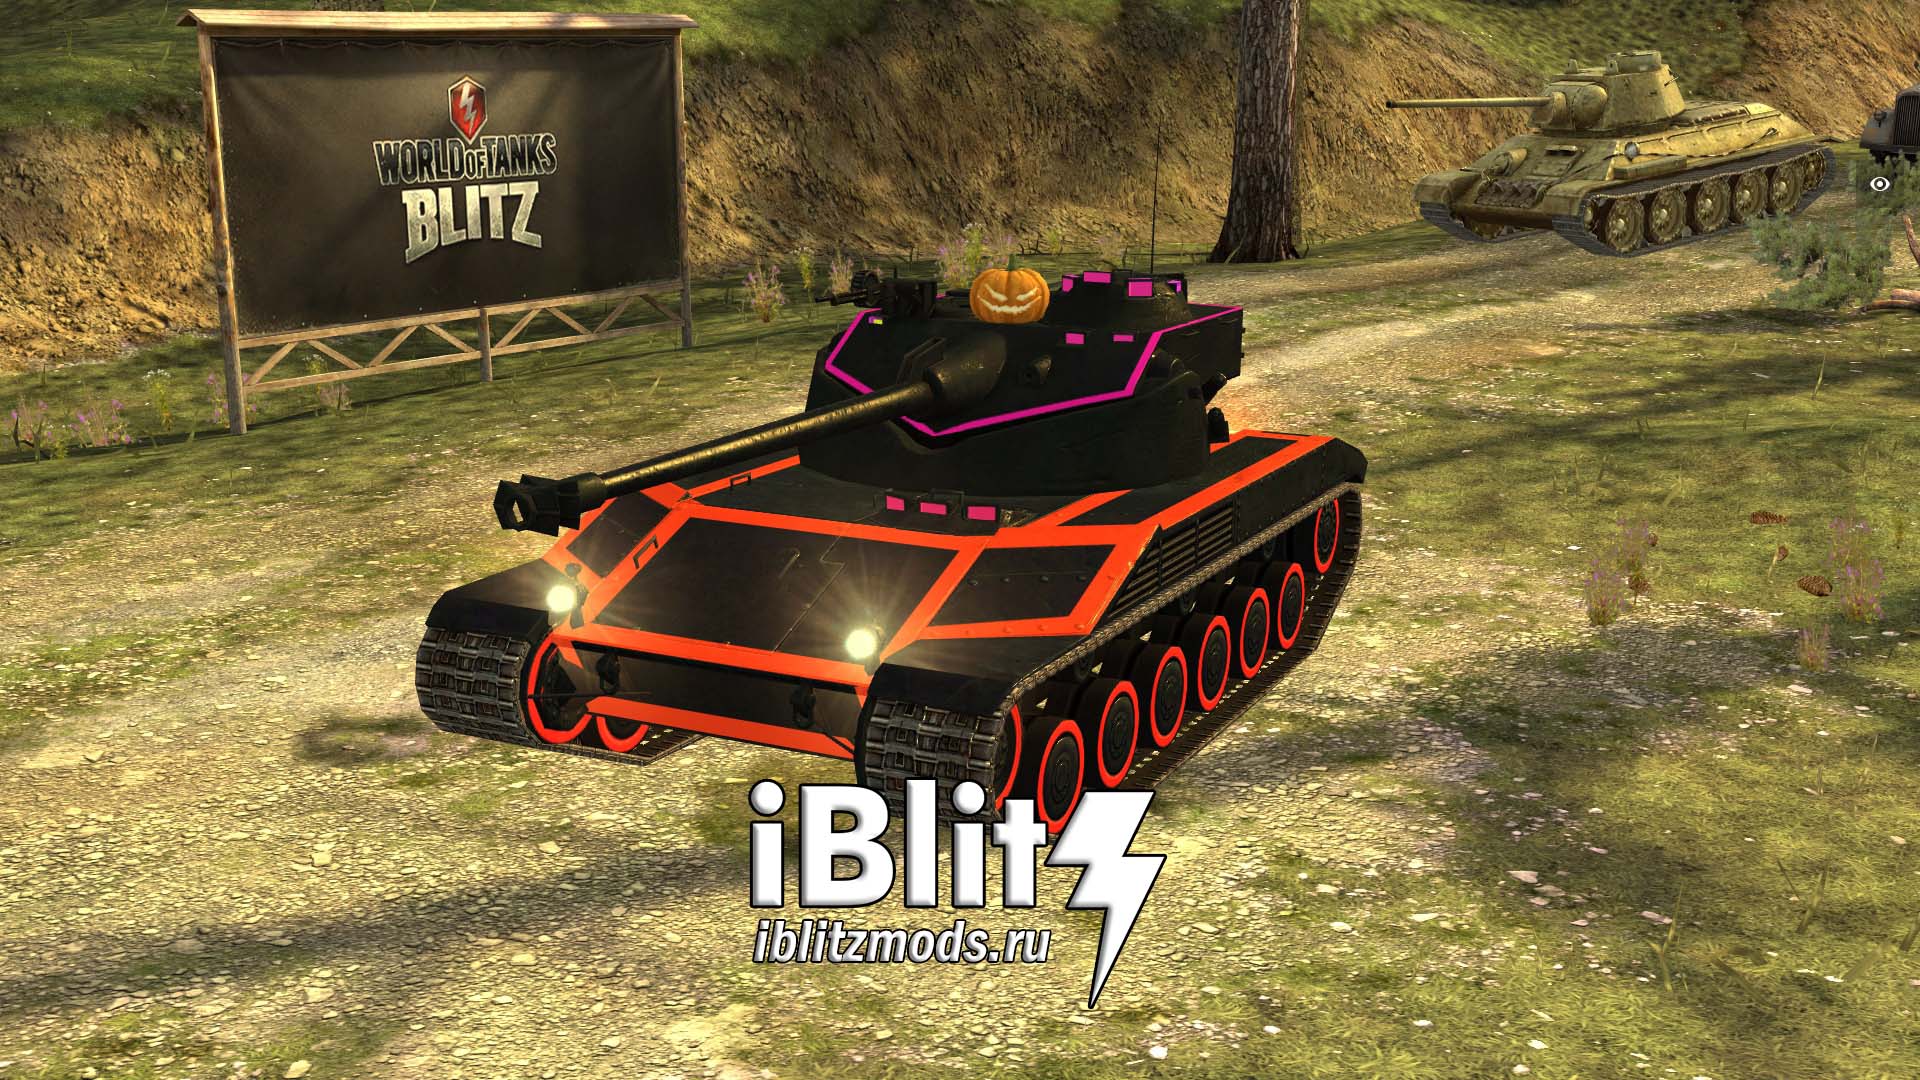 Скачать бесплатно шкурку на BatChatillon 25t Intruder для WoT Blitz. Моды на шкурки для вот блиц. Модификации World of Tanks Blitz.